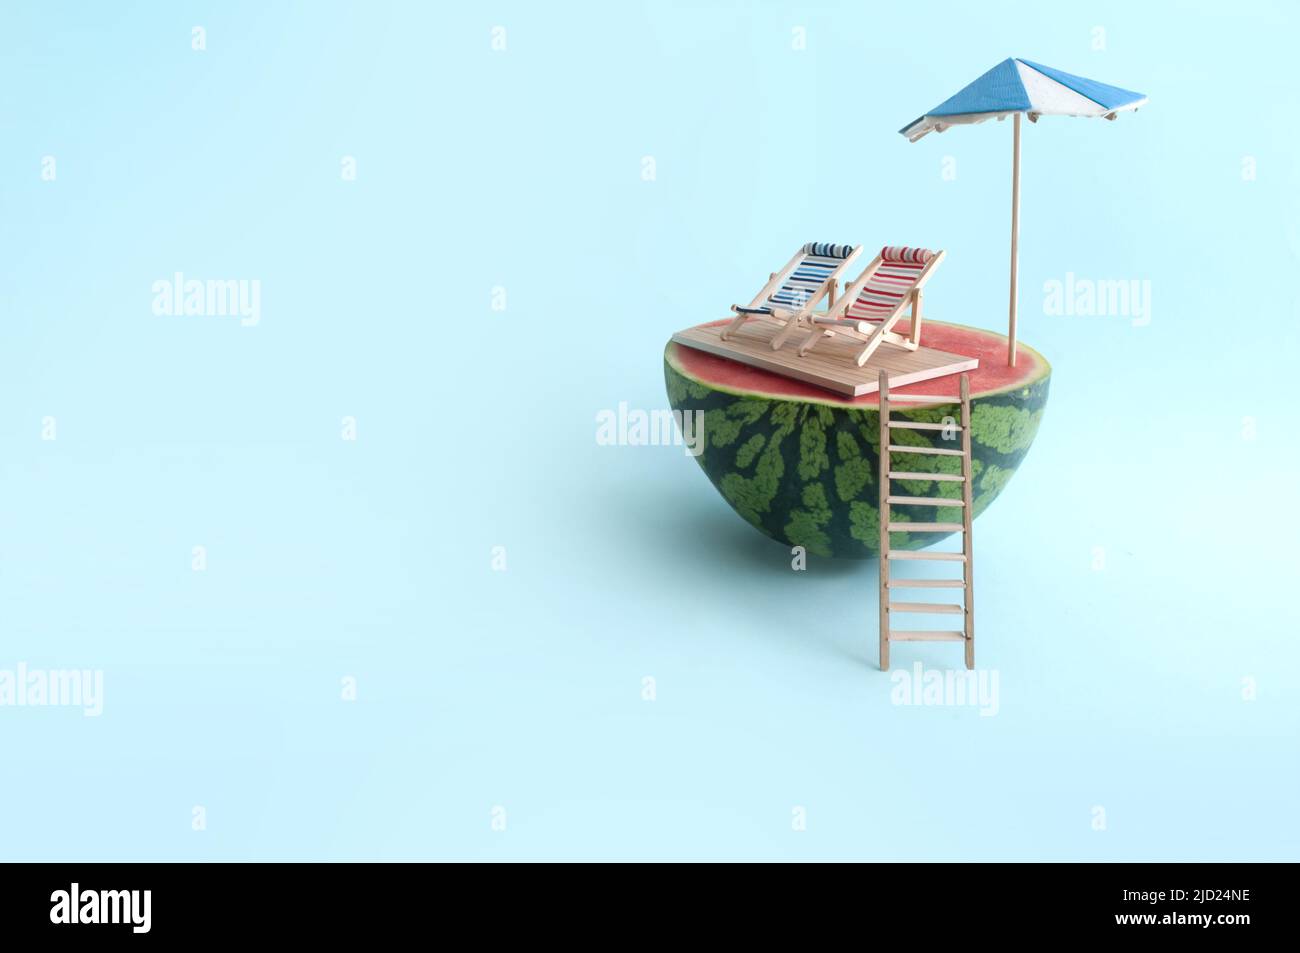 Concepto de vacaciones de verano en la playa, sandía con sombrilla, dos tumbonas y escalera de madera en la playa Foto de stock